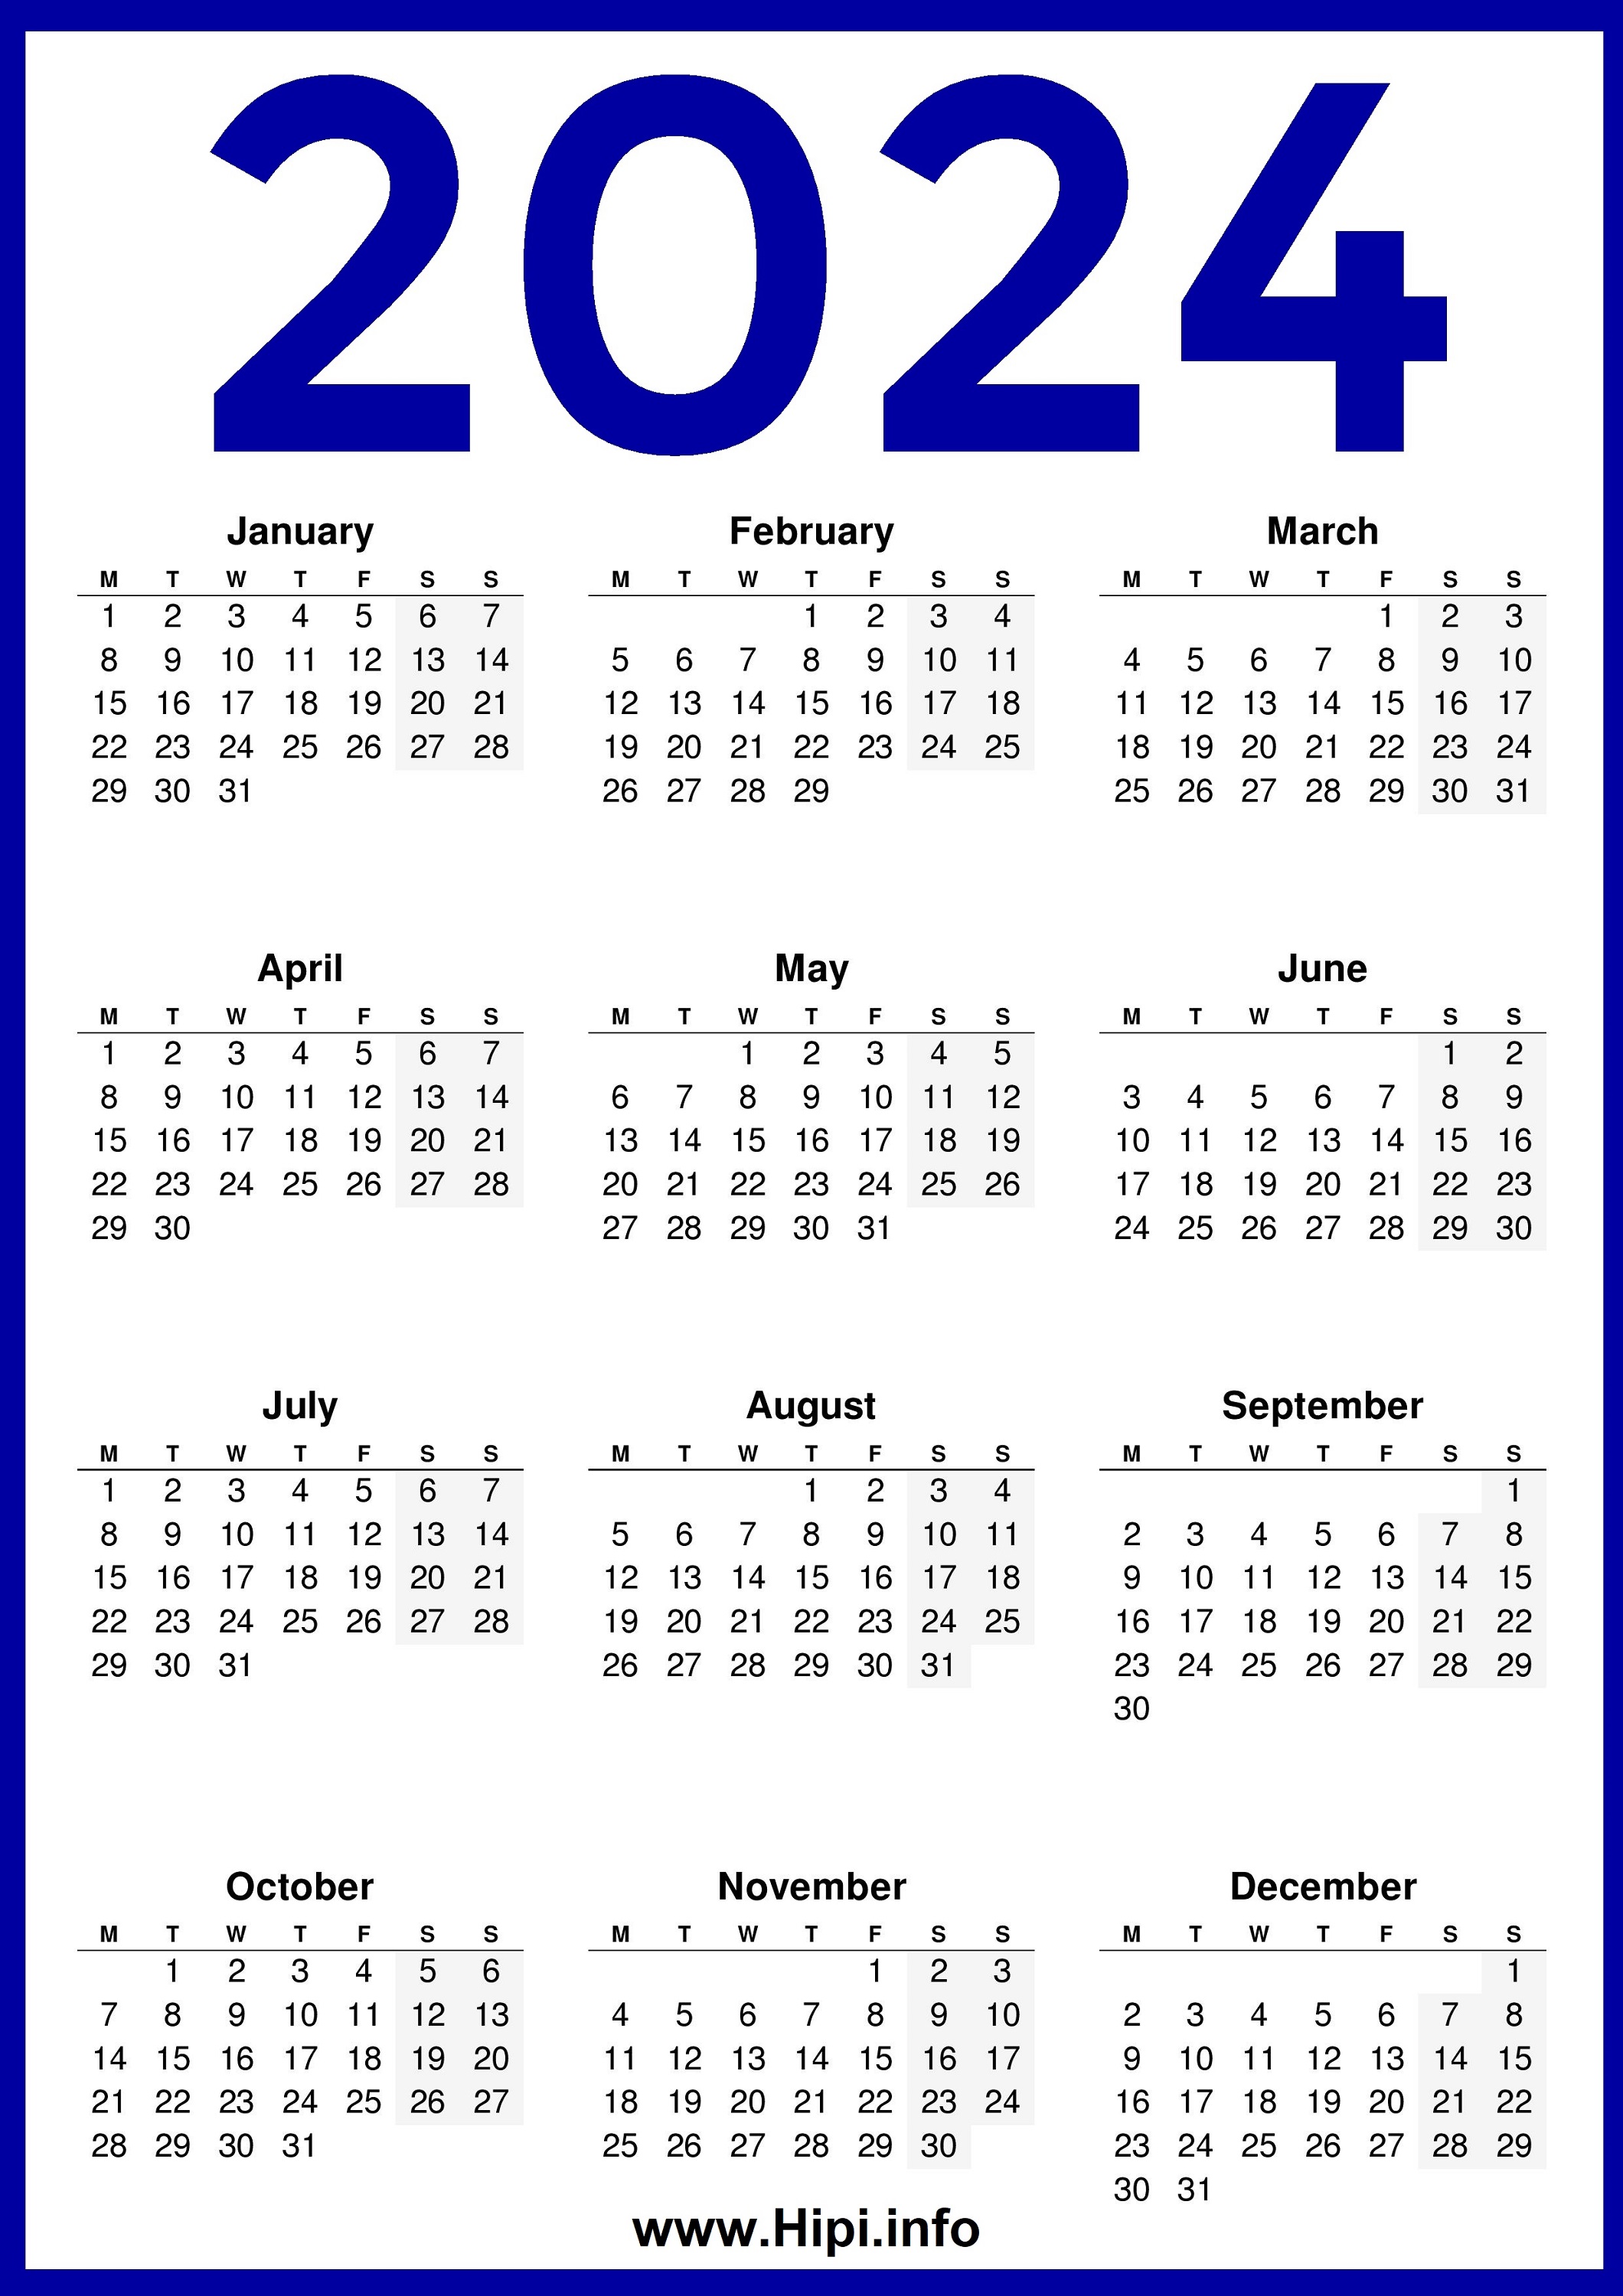 2024 UK Calendar 02 